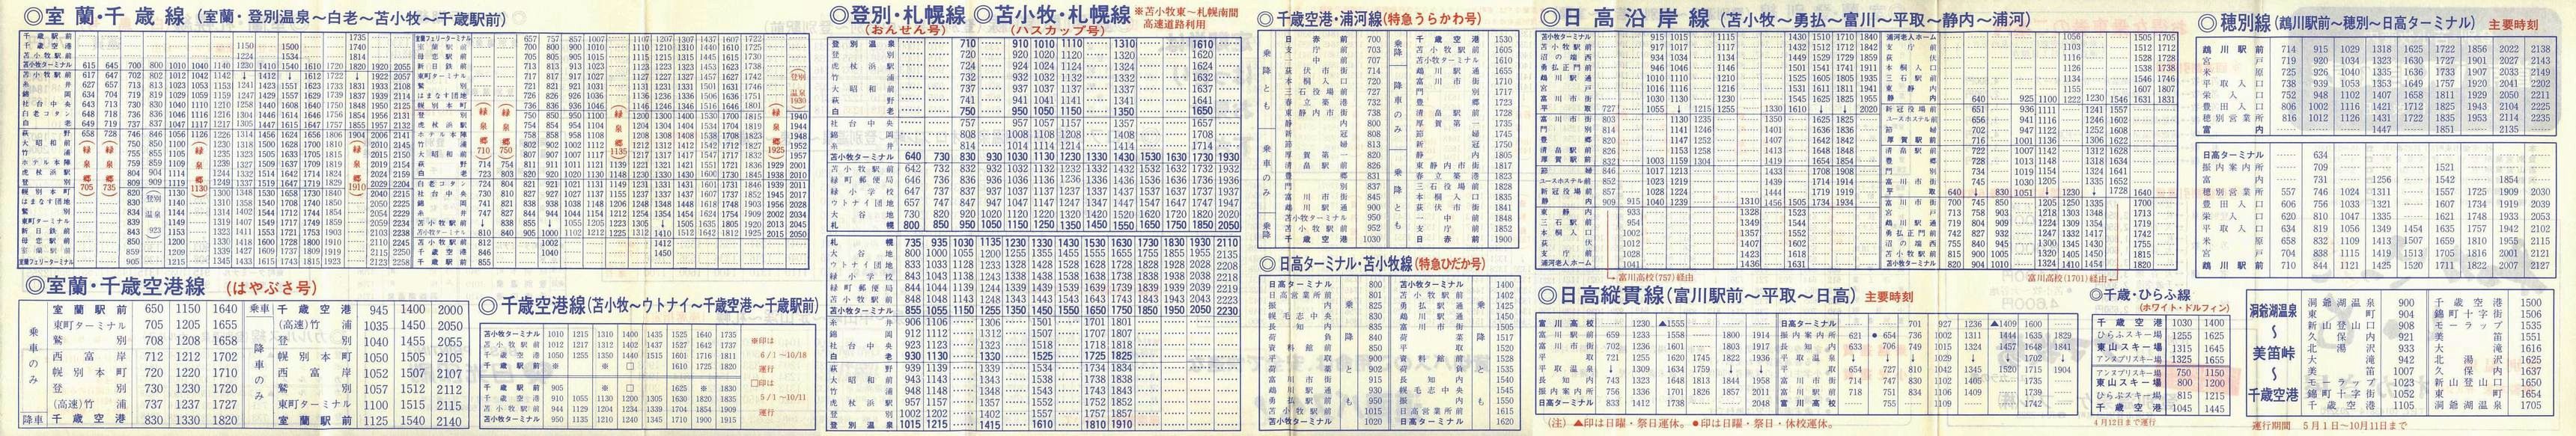 1987-04-01改正_道南バス_登別・苫小牧管内時刻表裏面